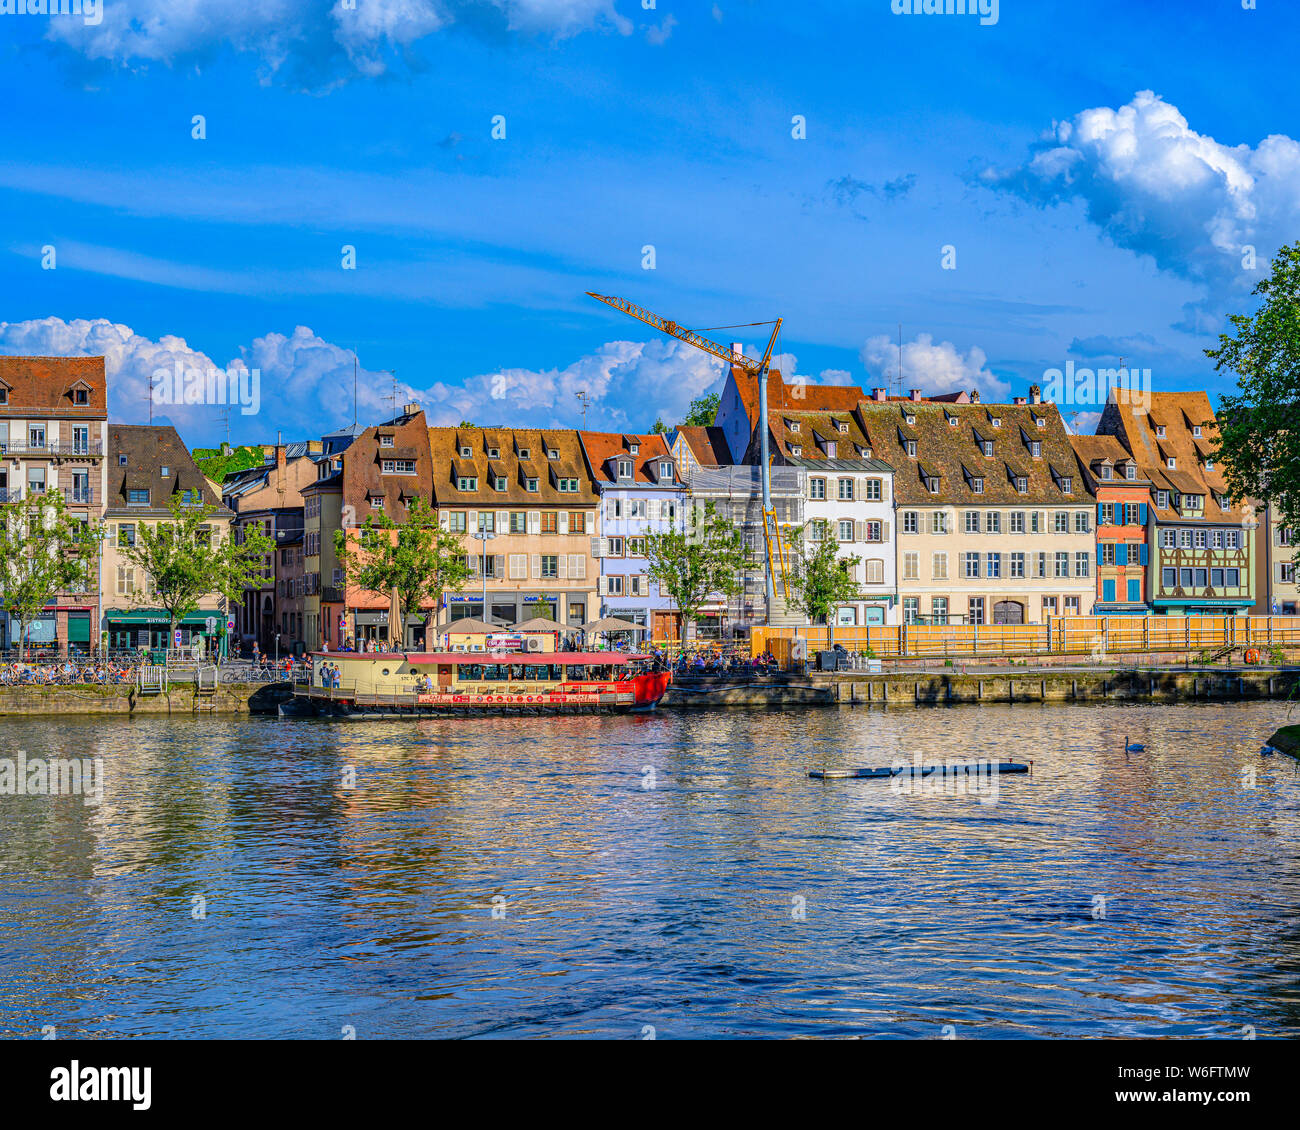 Straßburg, Ill, Quai des Pêcheurs Quay, Fischer Wharf, angelegter Lastkahn, Waterfront Häuser, Elsass, Frankreich, Europa, Stockfoto